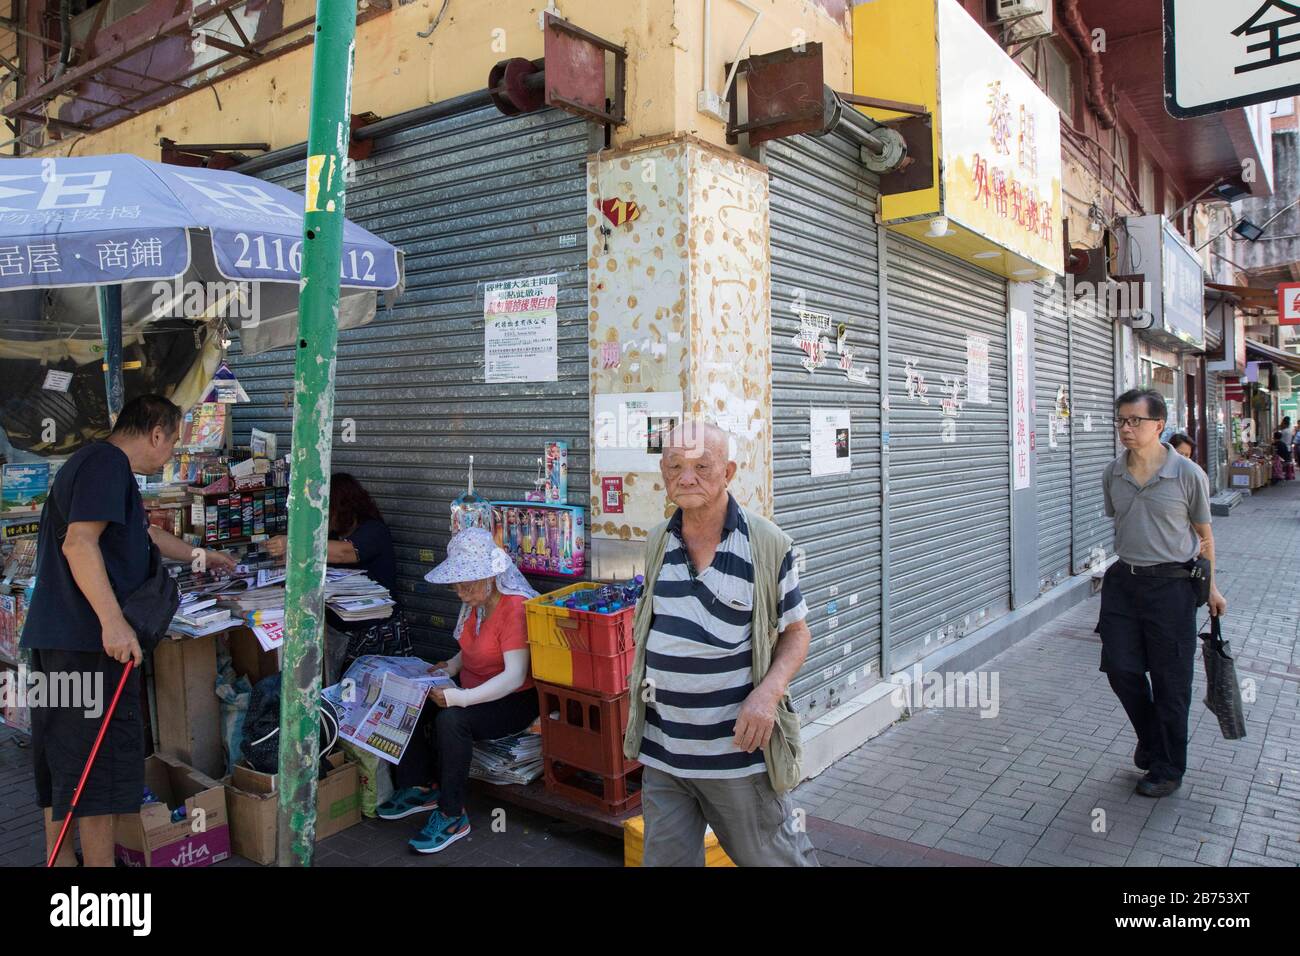 Les magasins sont hors des affaires dans la zone touristique de Sheung Shui à Hong Kong. Sheung Shui était la zone commerçante préférée pour les touristes chinois parce qu'elle est proche de la frontière chinoise. Les ventes de chambres à Hong Kong ont diminué de 50 % en août. Banque D'Images